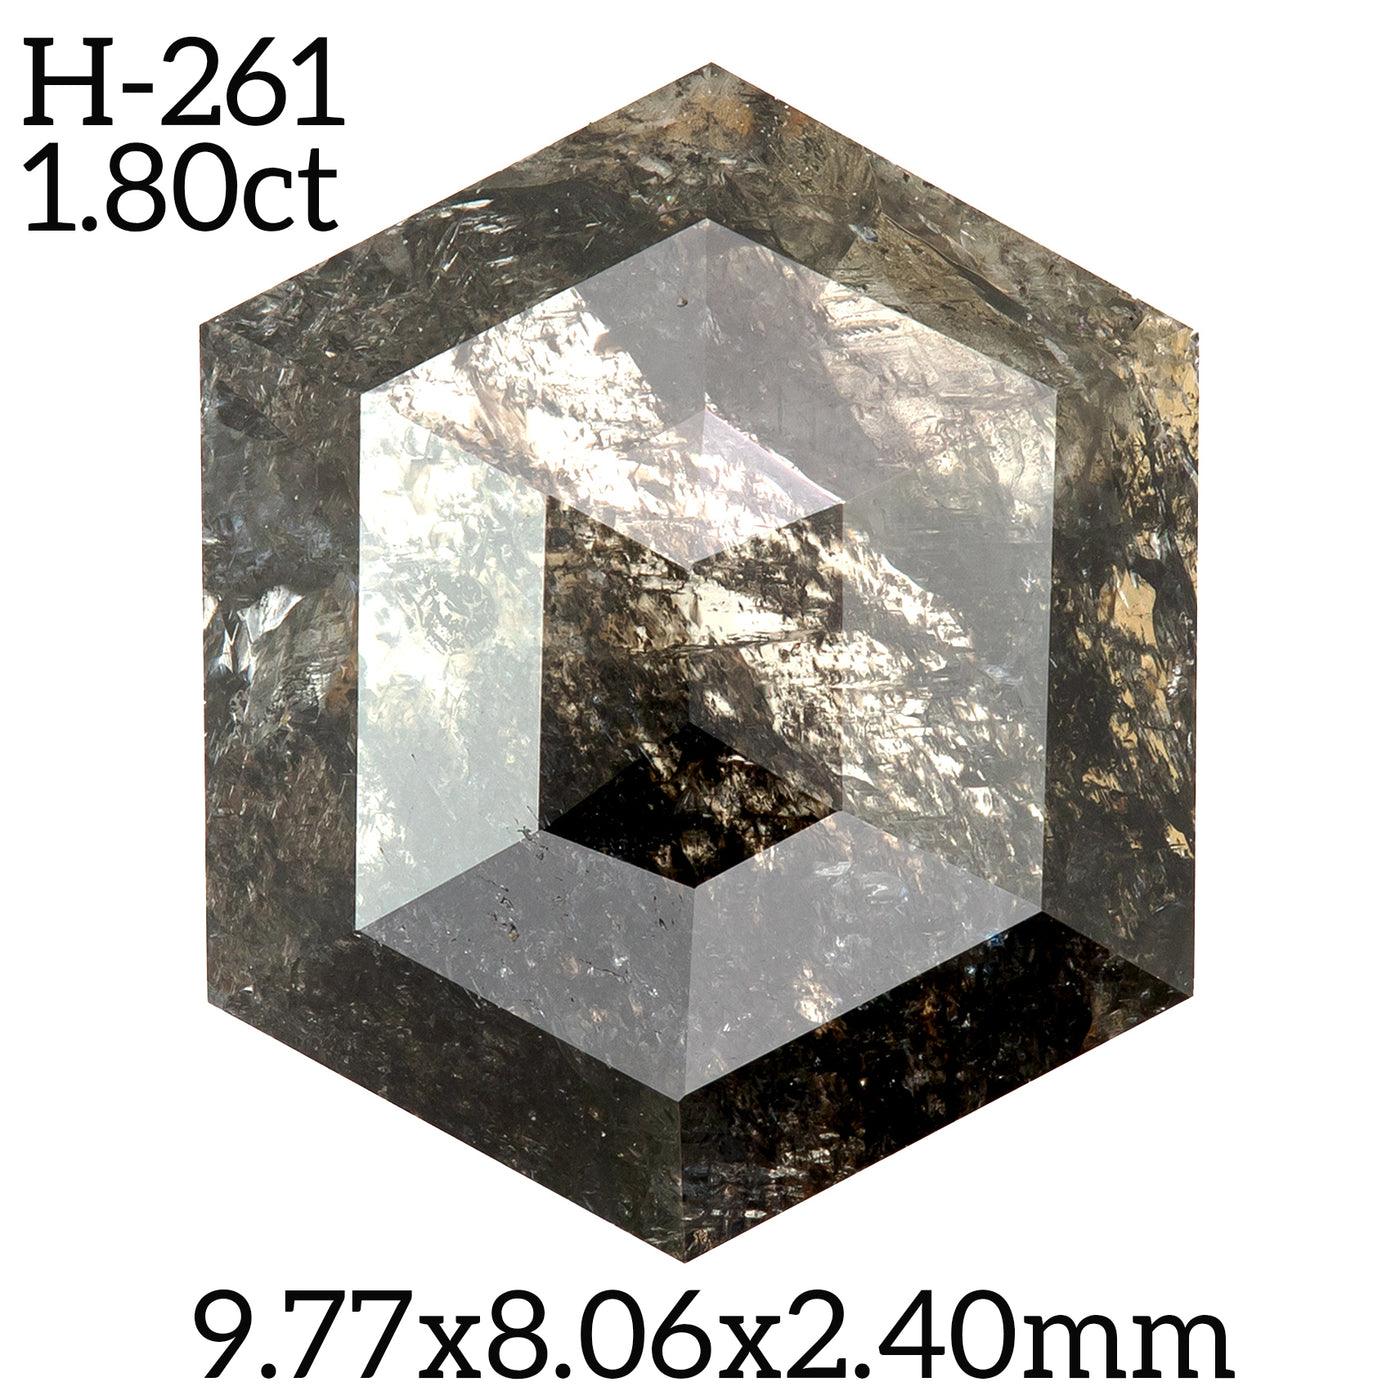 H261 - Salt and pepper hexagon diamond